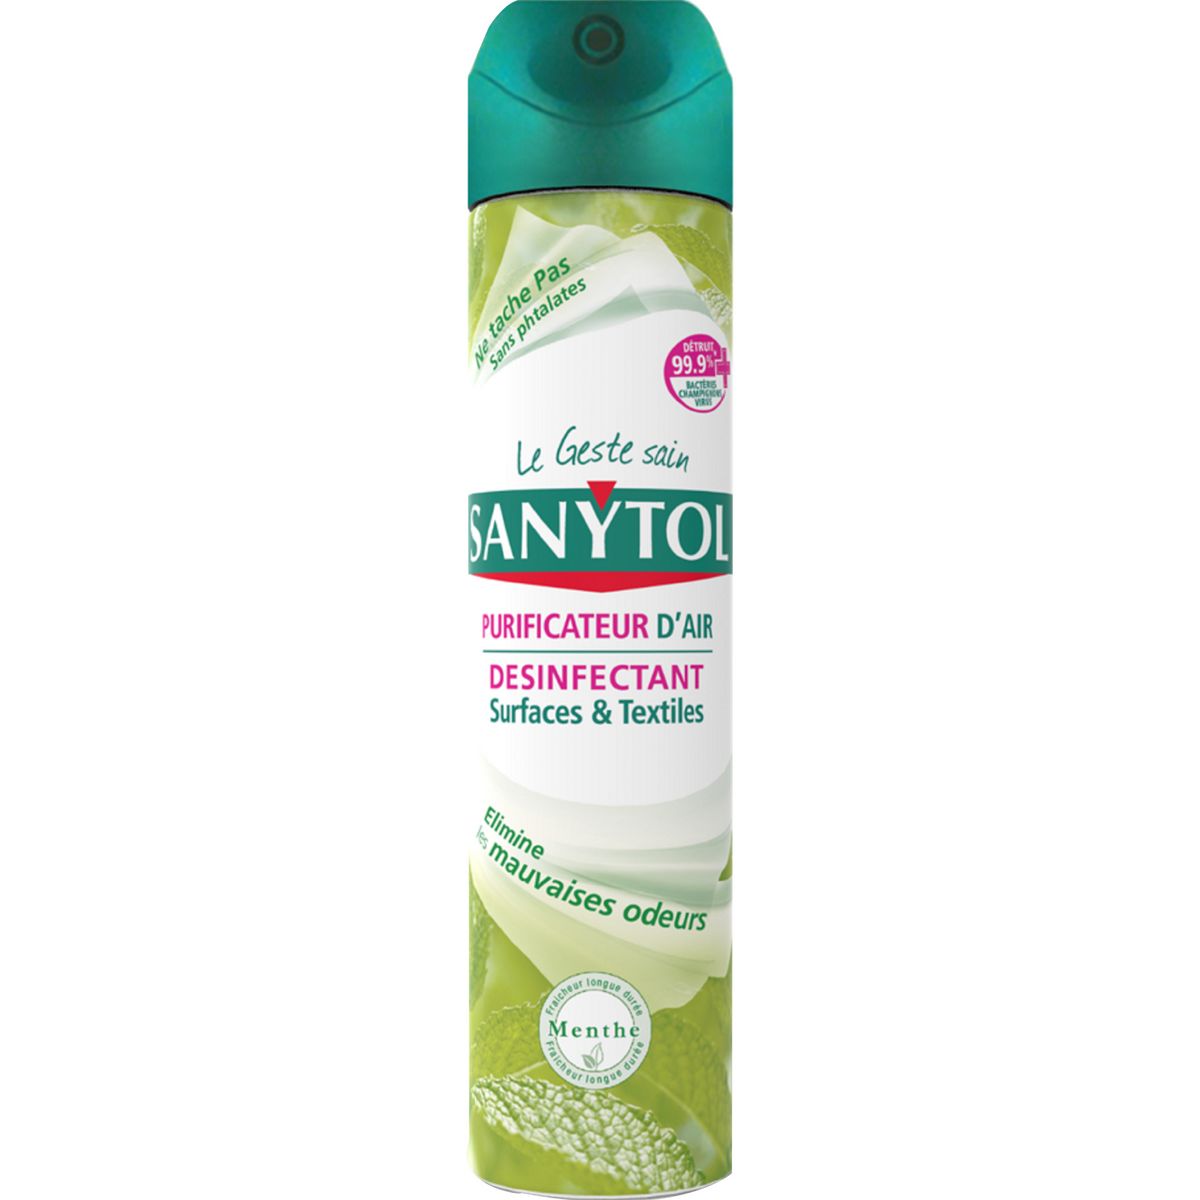 SANYTOL Spray purificateur d'air & désinfectant surfaces et textiles menthe 300ml